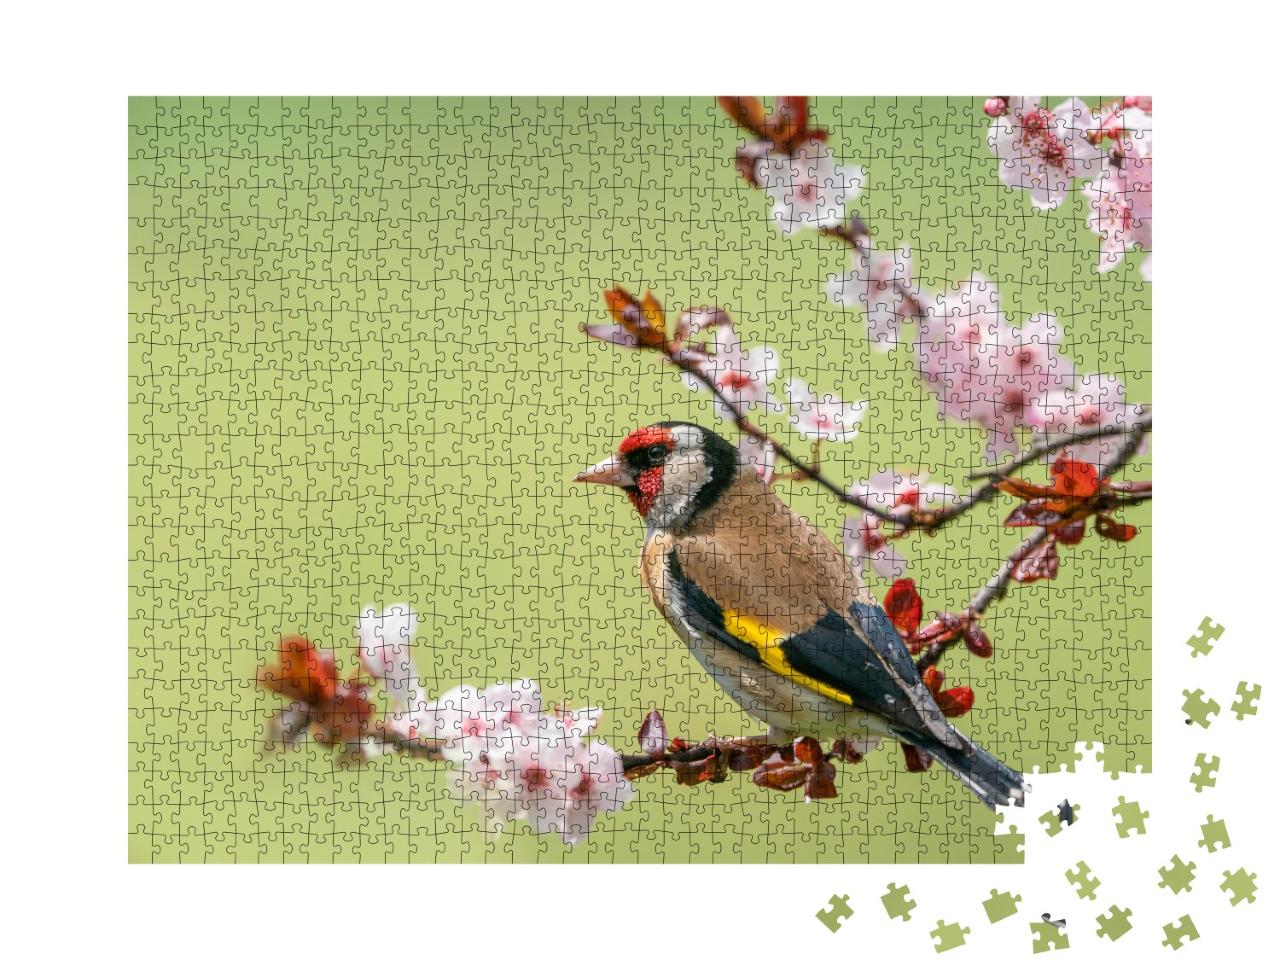 Puzzle 1000 Teile „Bunter Stieglitz auf einem Blütenzweig“